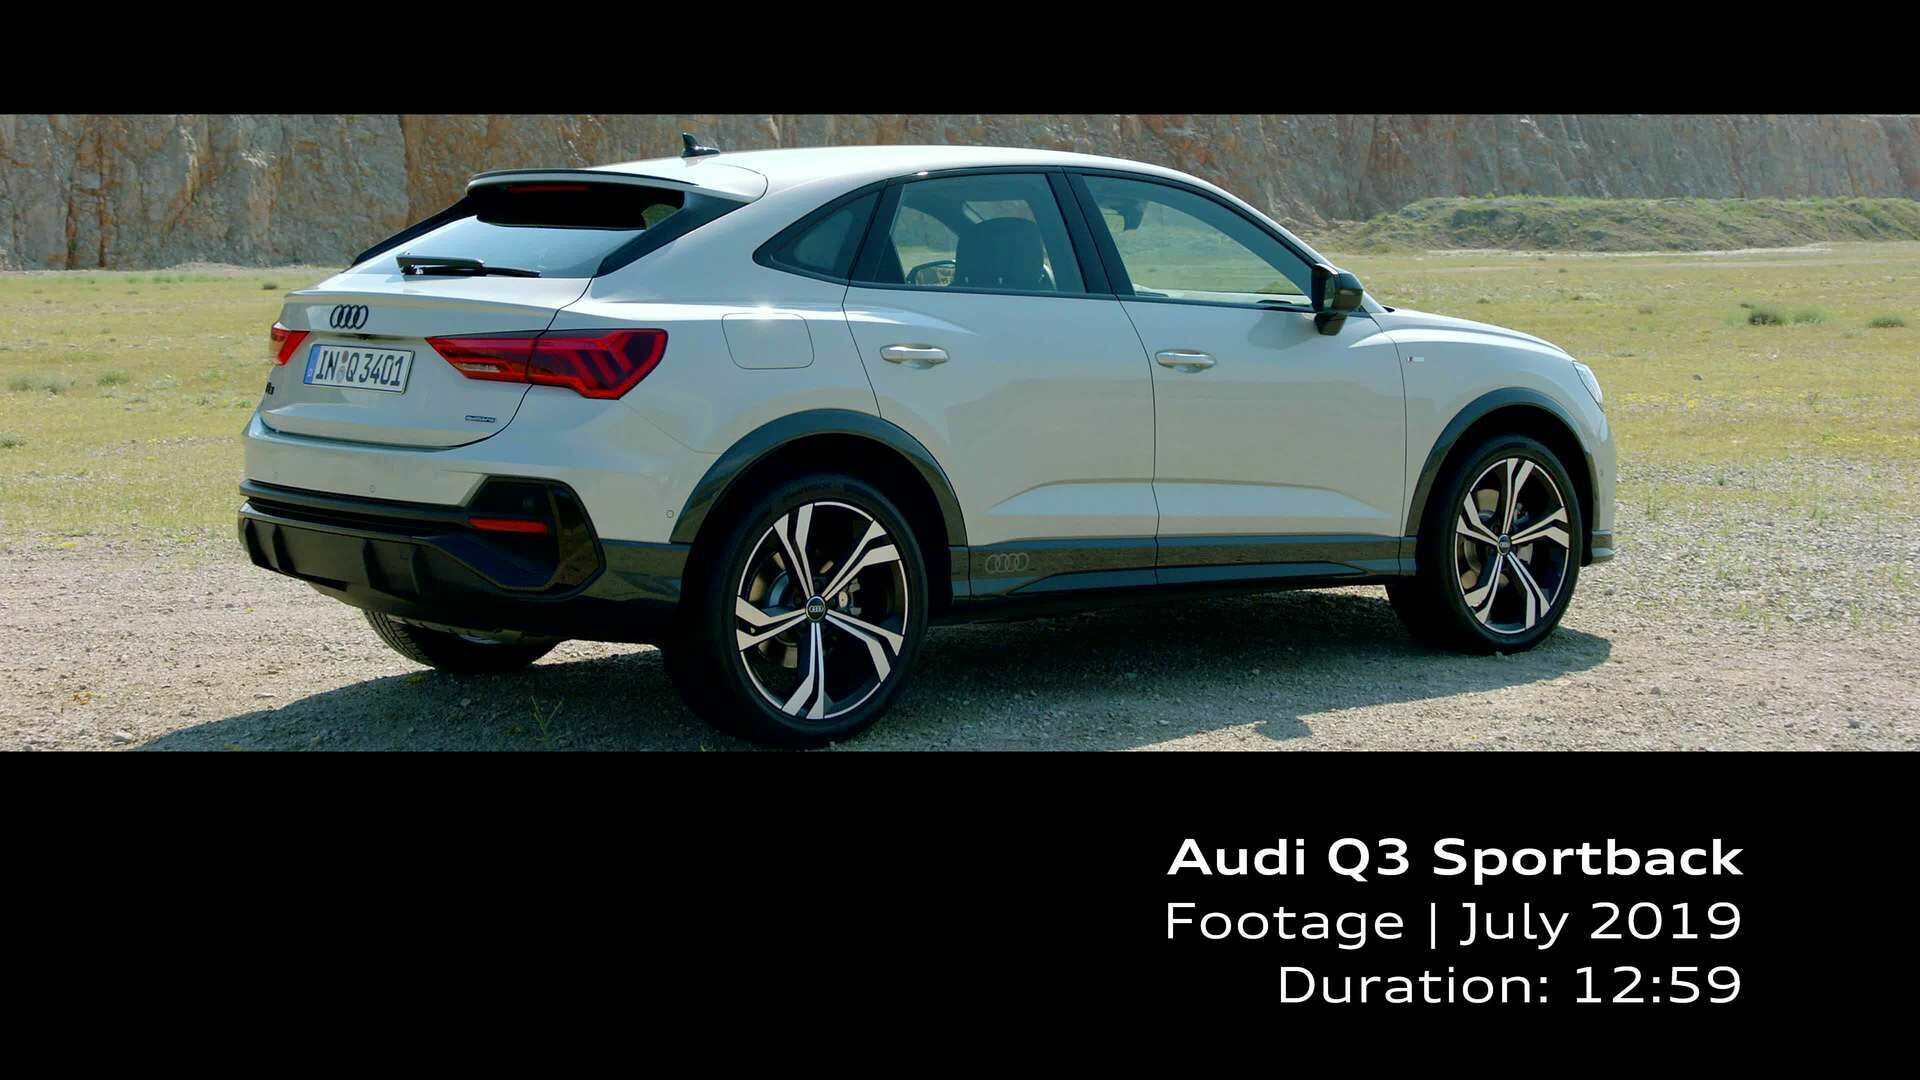 Audi Q3 Sportback (Footage)